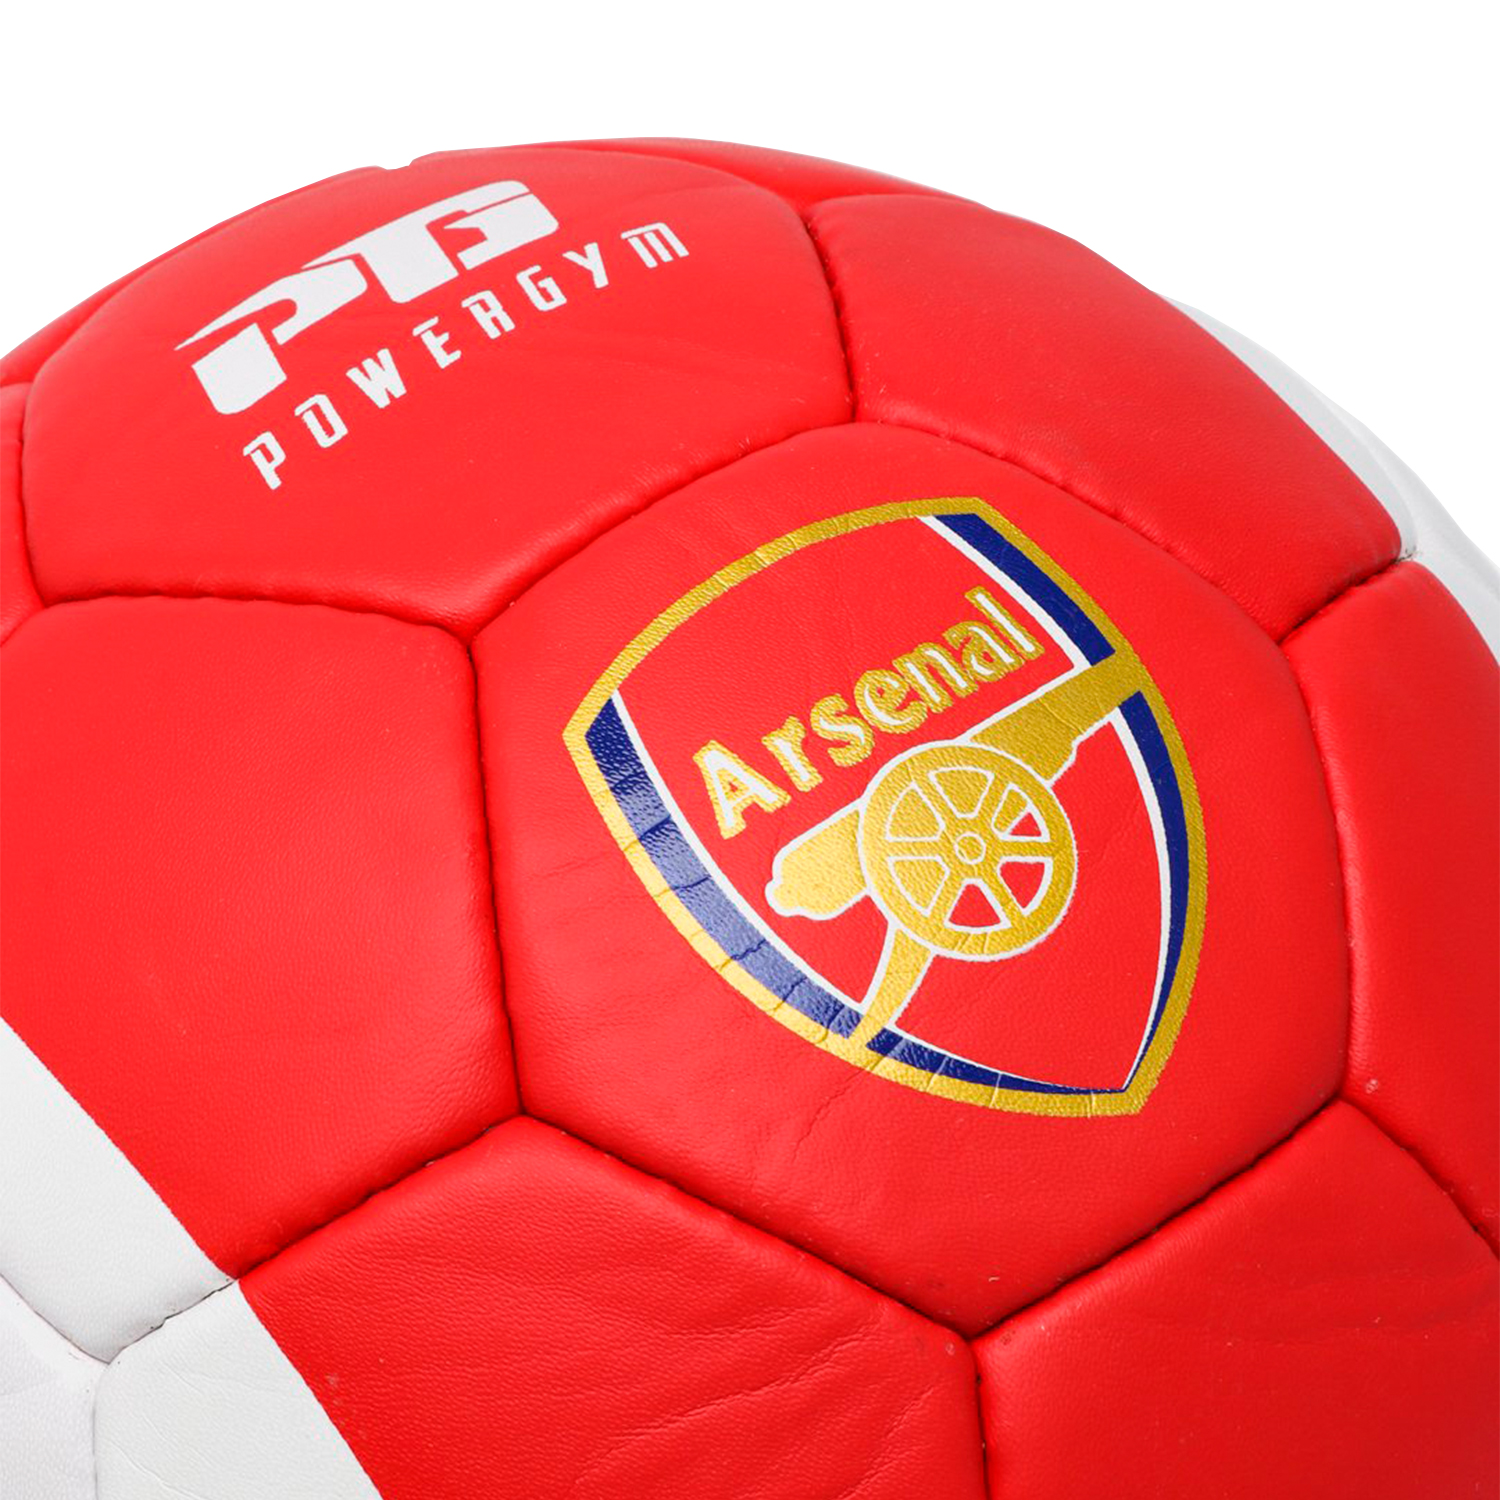 Футбольный мяч "Arsenal"